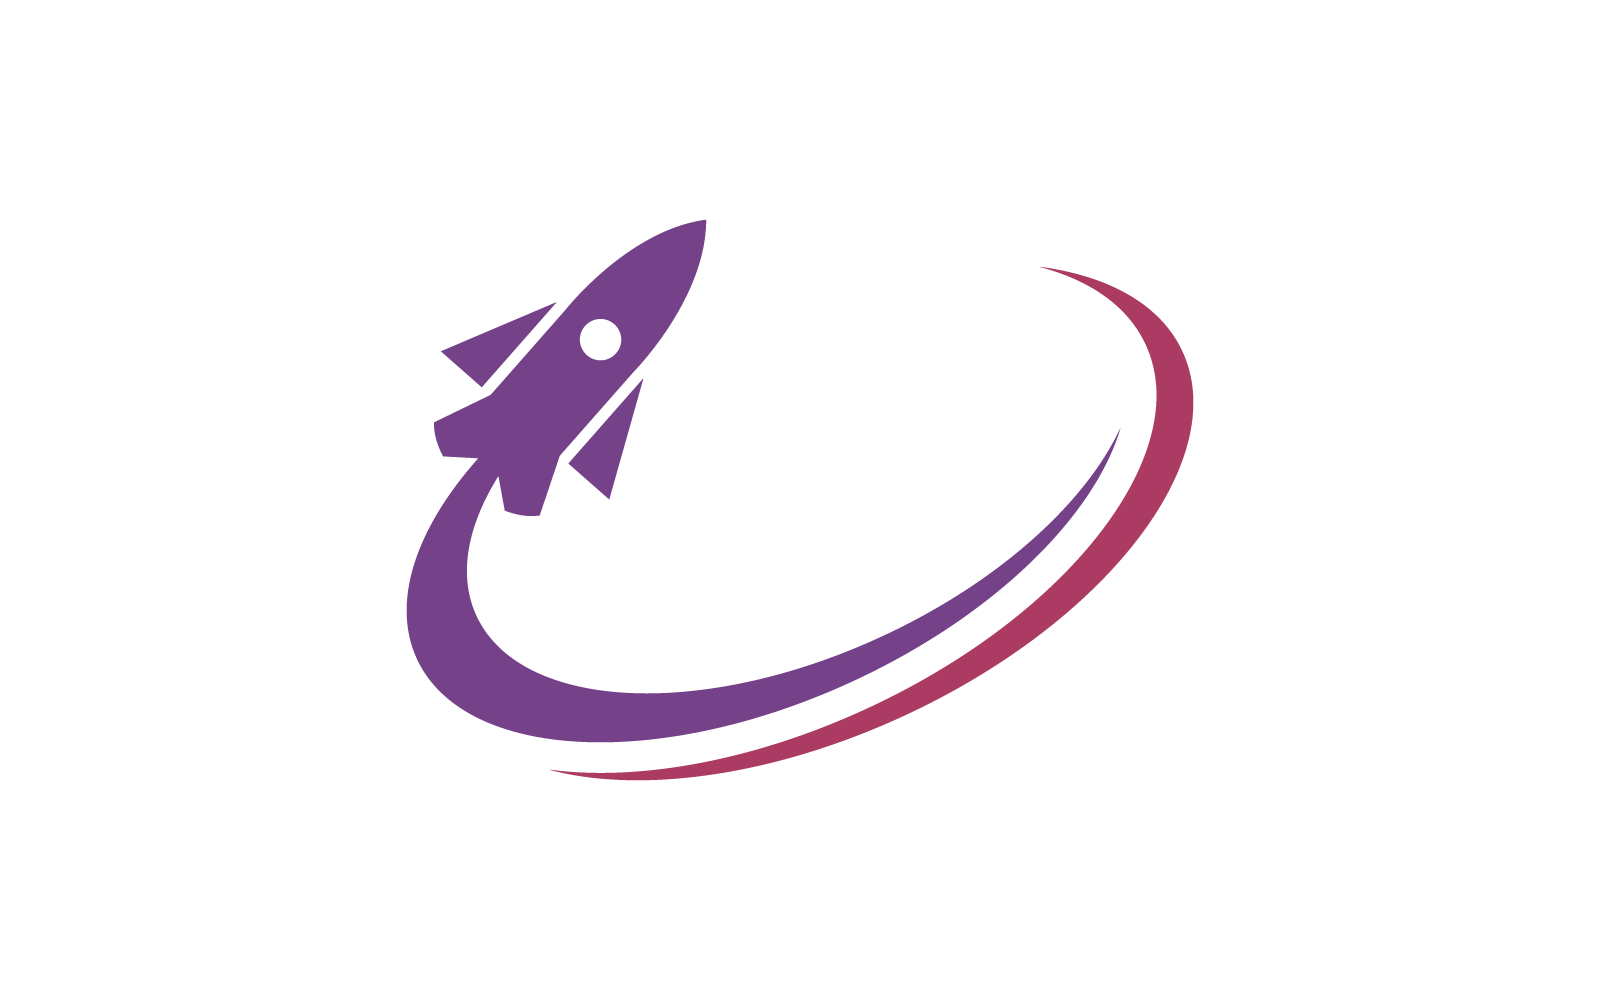 Rocket ilustration logo vector design template